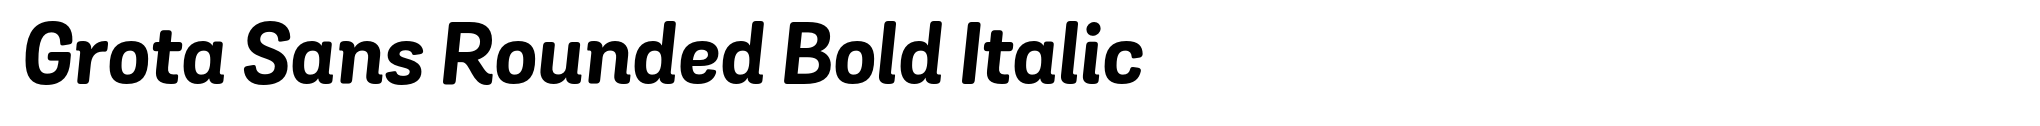 Grota Sans Rounded Bold Italic image